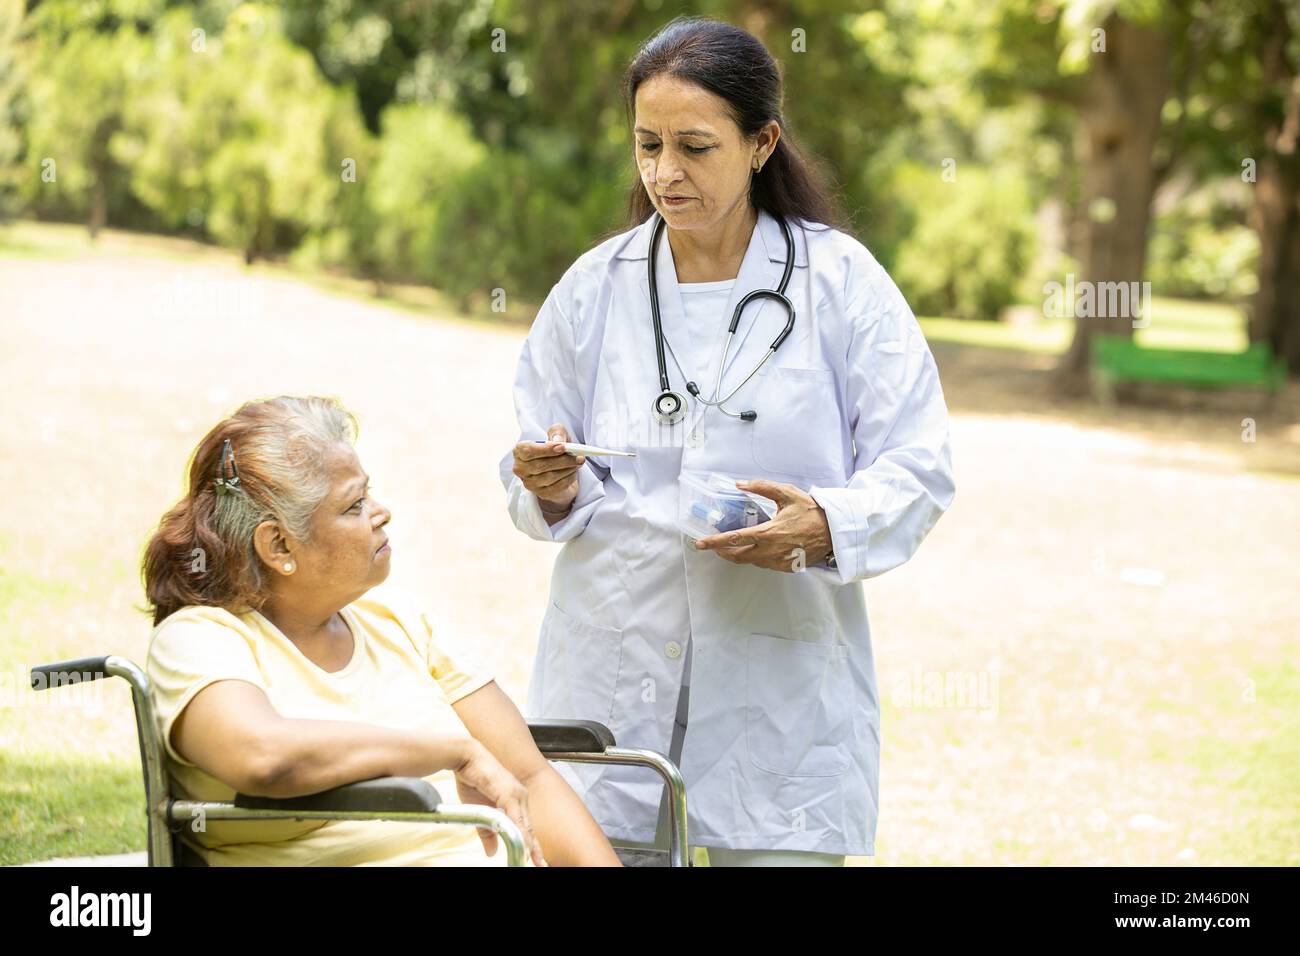 Il medico indiano o l'infermiere misurano la temperatura corporea con il termometro paziente anziano in una sedia a rotelle all'aperto nel parco. Foto Stock